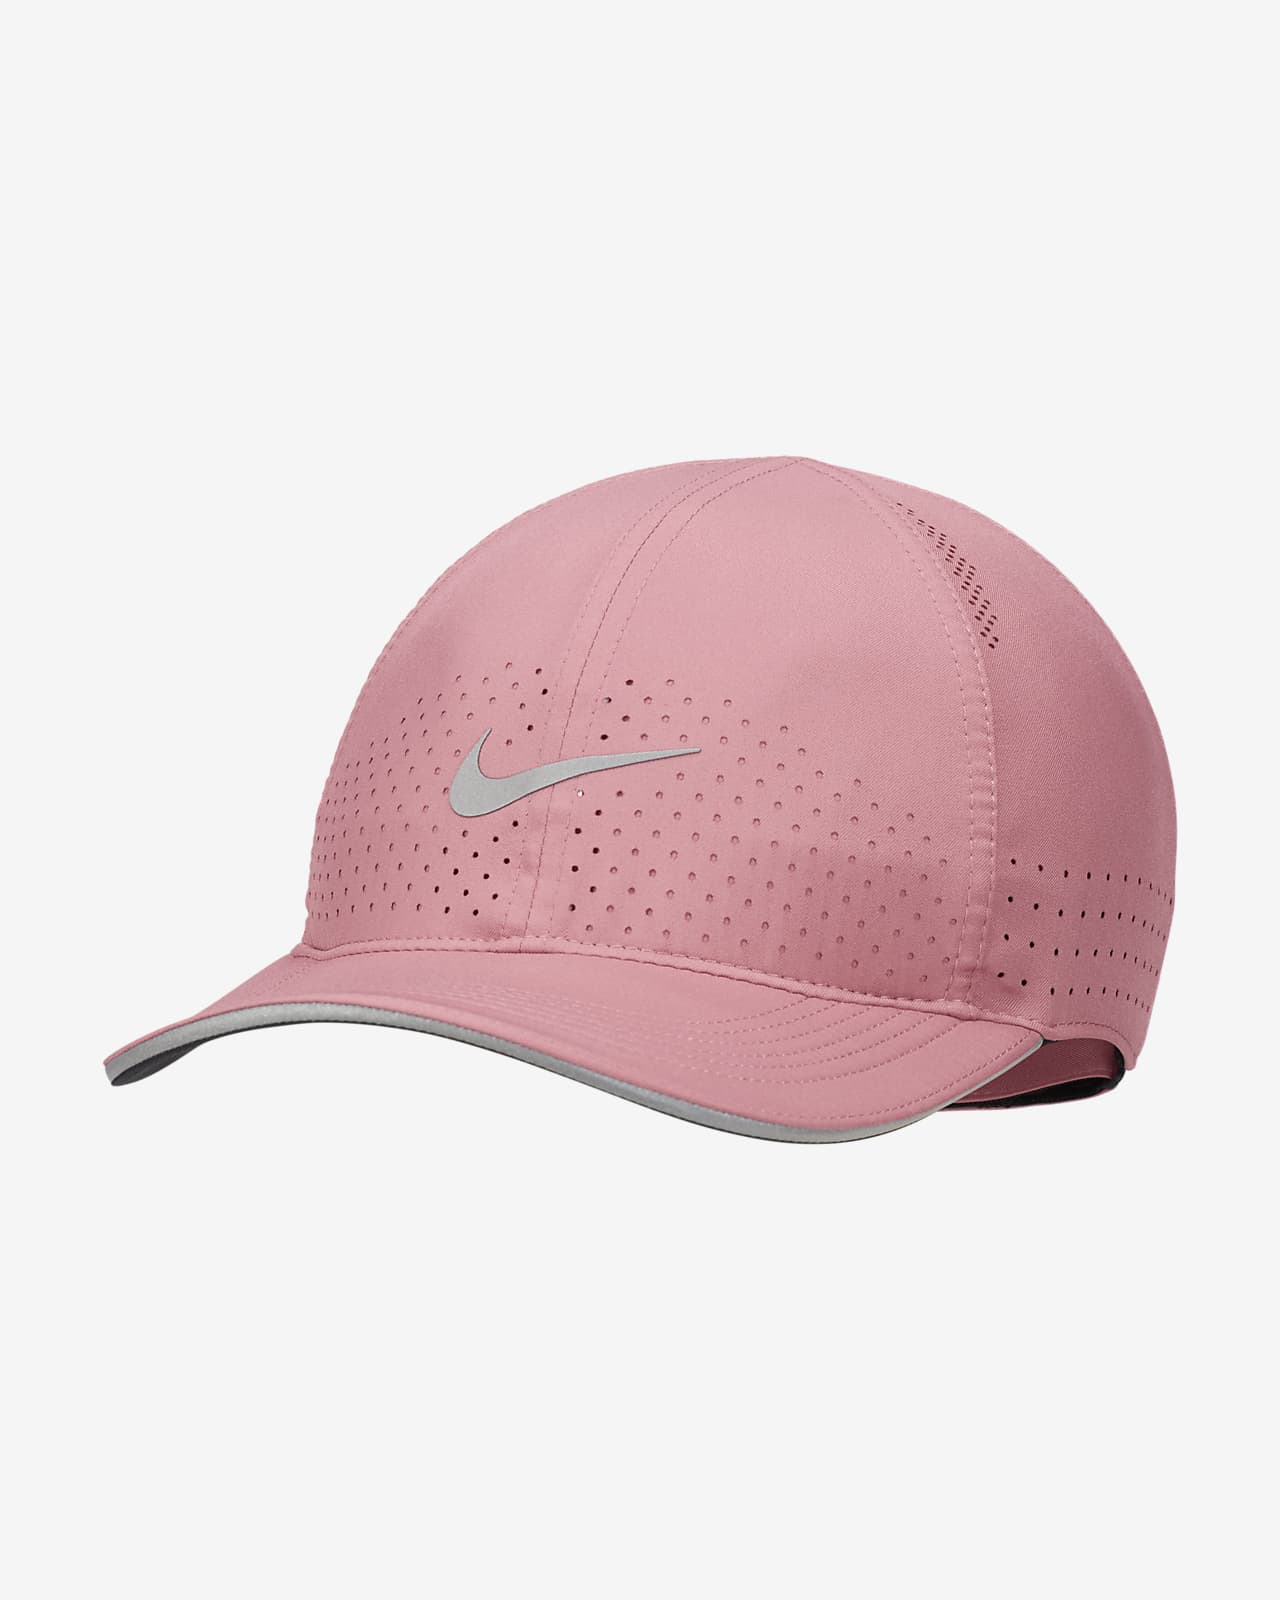 Nike Lightweight Ventilated Running Cap